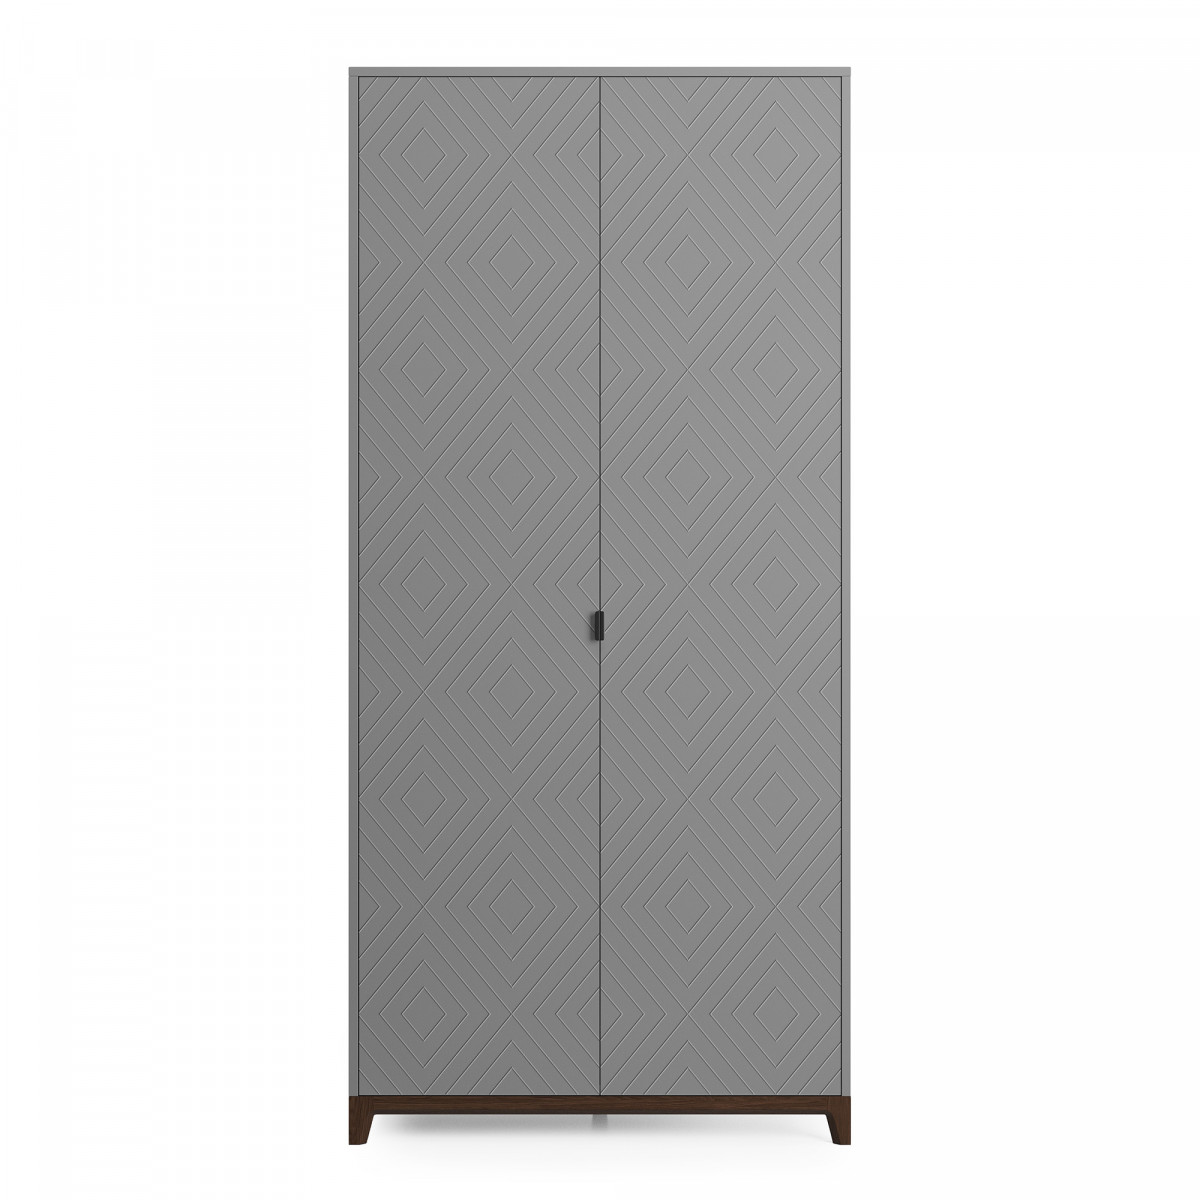 Шкаф cs211 (the idea) серый 103x221x60 см.